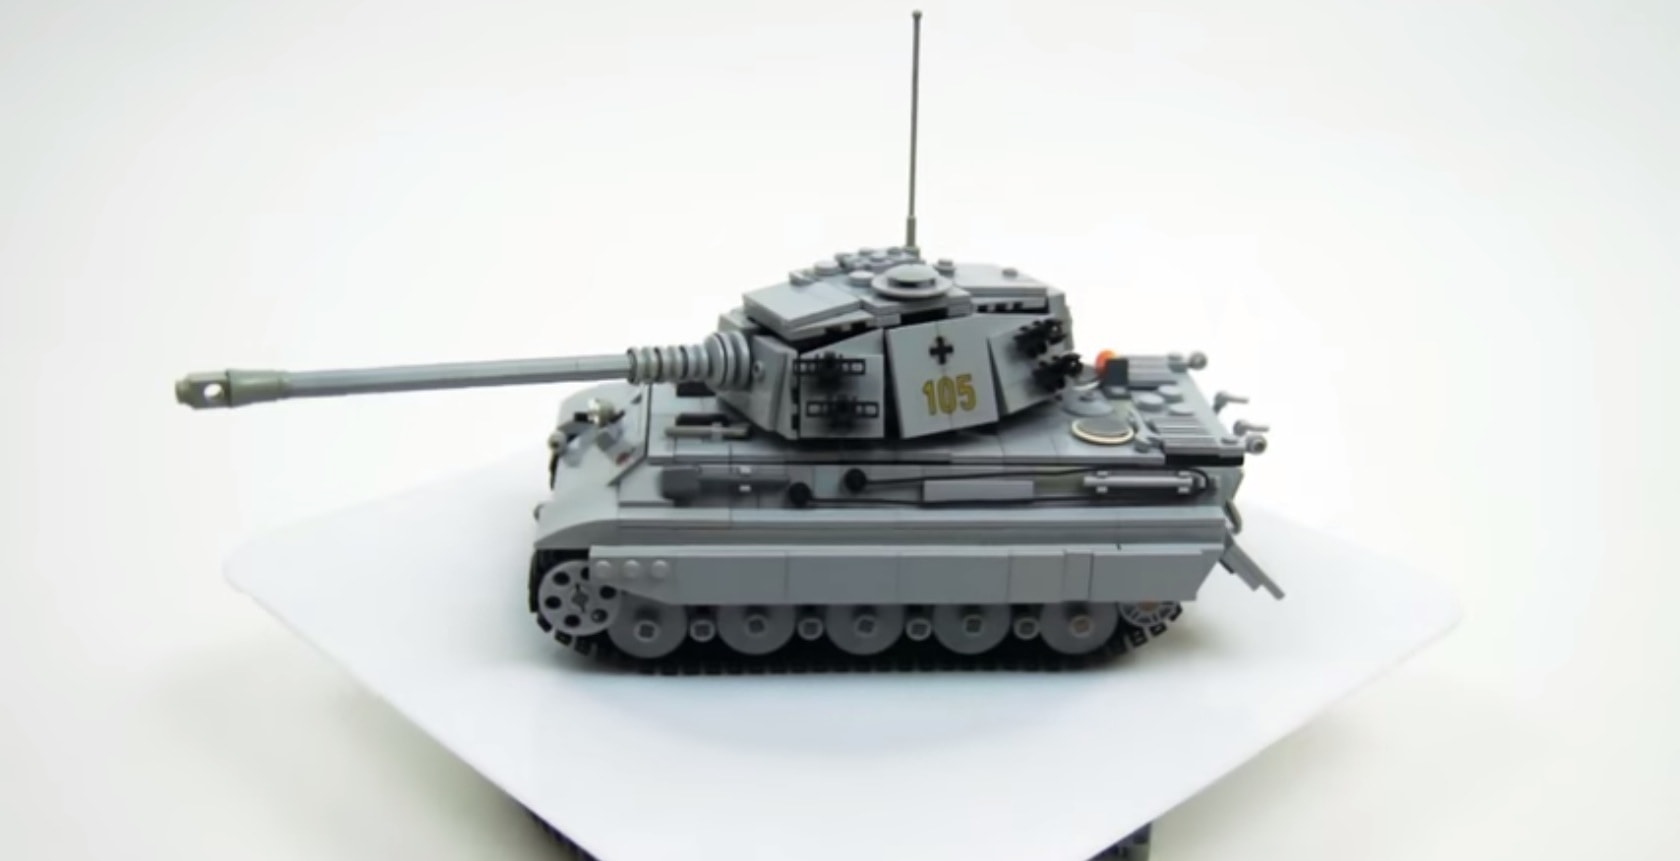  Lego Ww2 Tank